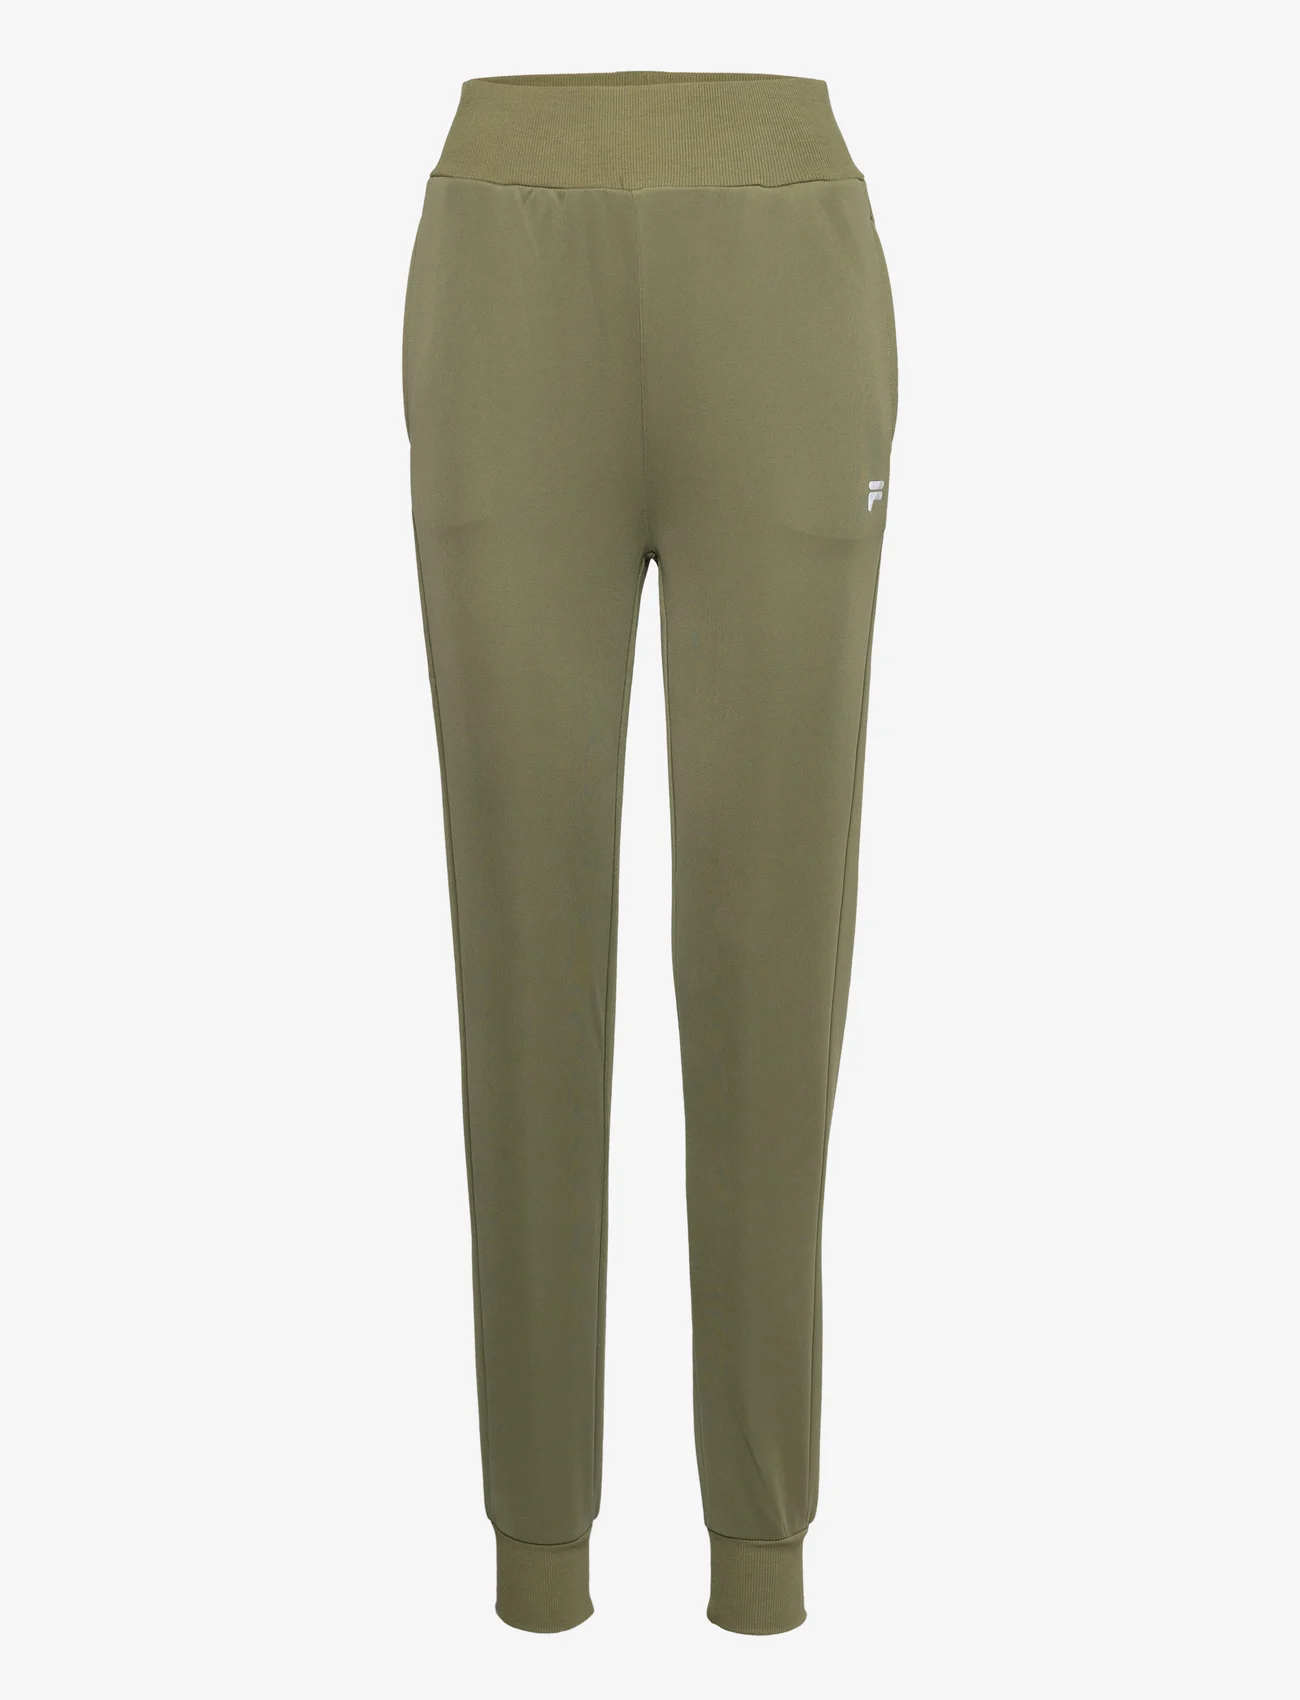 FILA - CAGLI high waist pants - collegehousut - loden green - 0